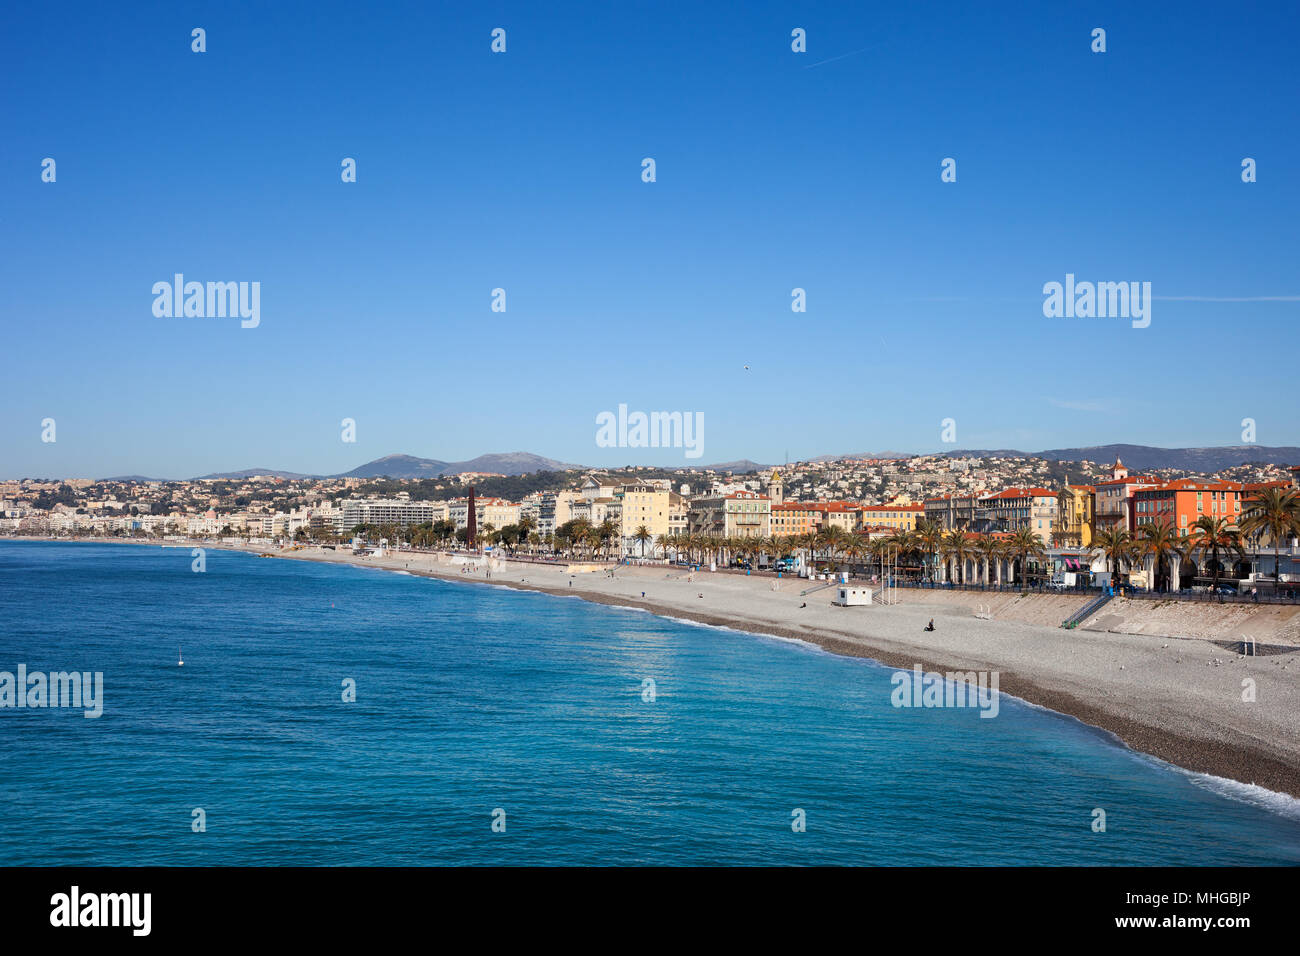 La città di Nizza in Francia, skyline con la spiaggia e il mare a Costa Azzurra (Cote d'Azur). Foto Stock